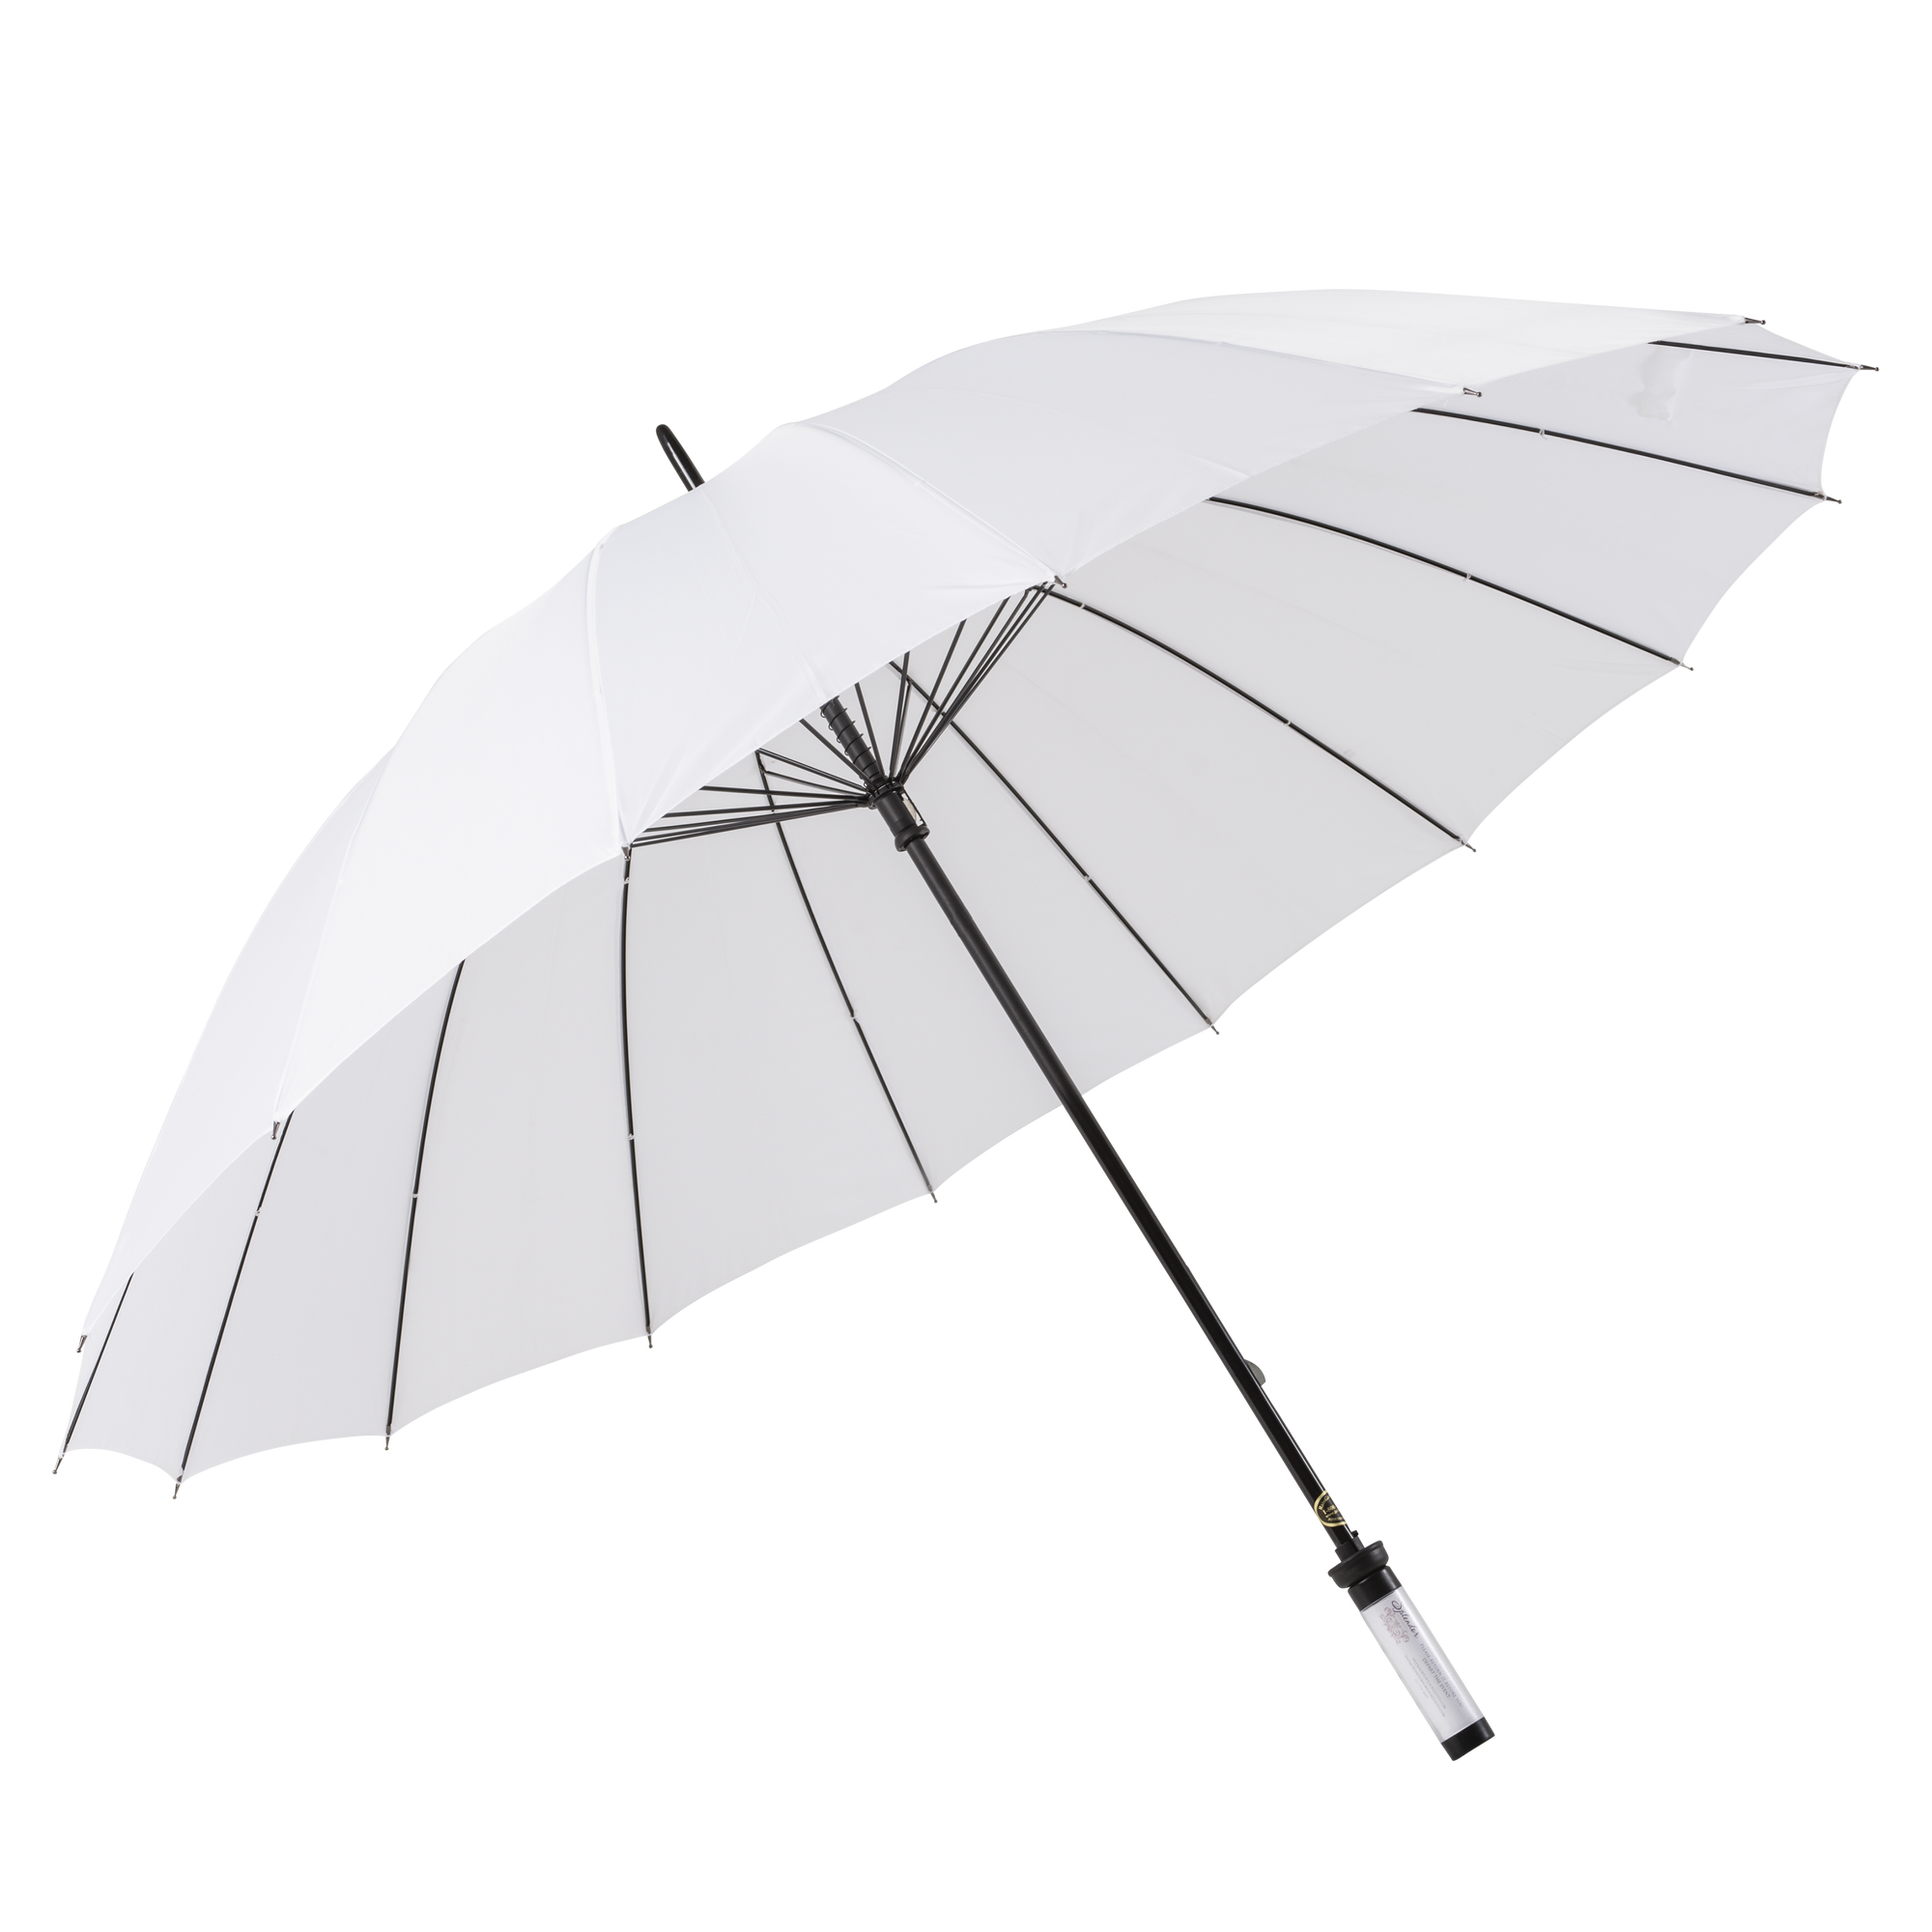 White umbrellas for rental